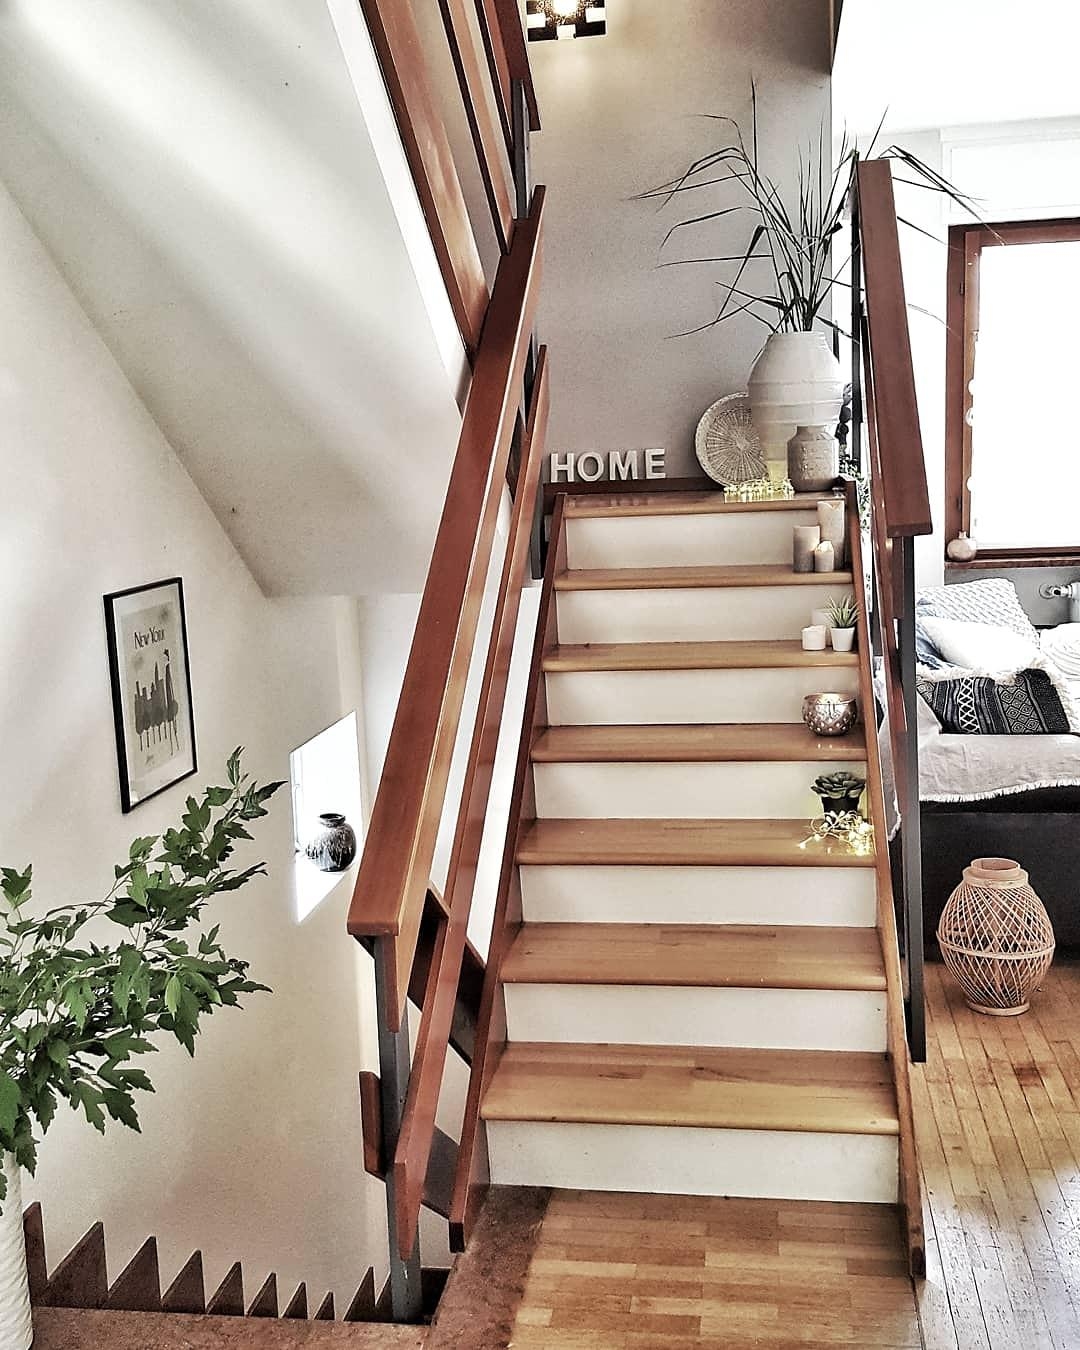 Unser offenes Treppenhaus aus den 60ern
#interior #design #couchliebt #wohnzimmer 